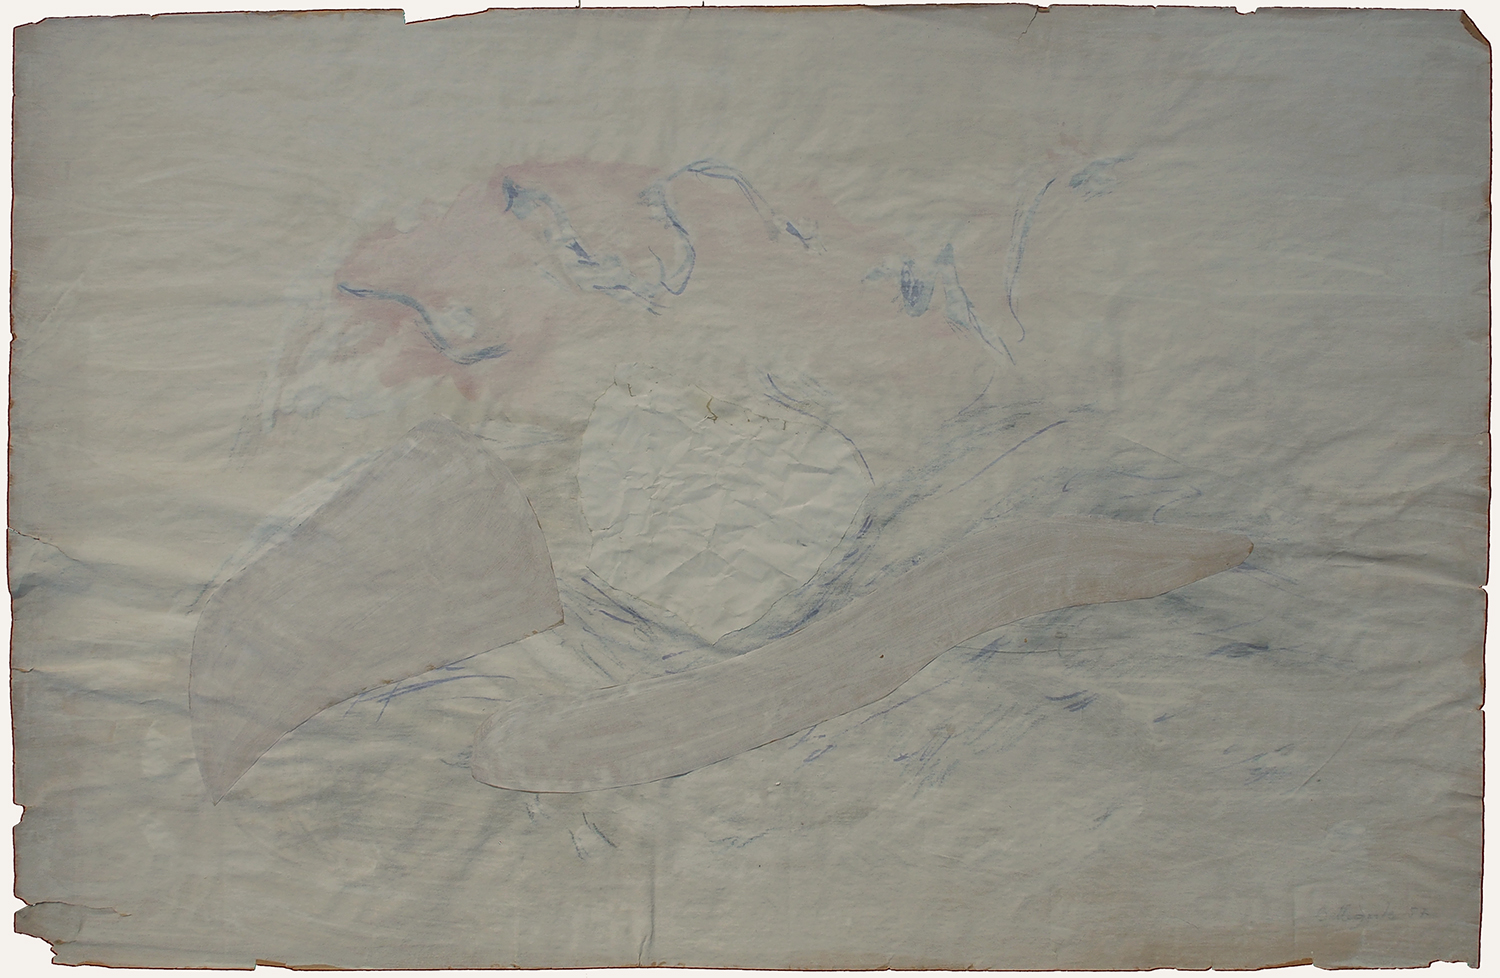 1956 gouache, feutre, collage sur papier - 64 x 100 cm